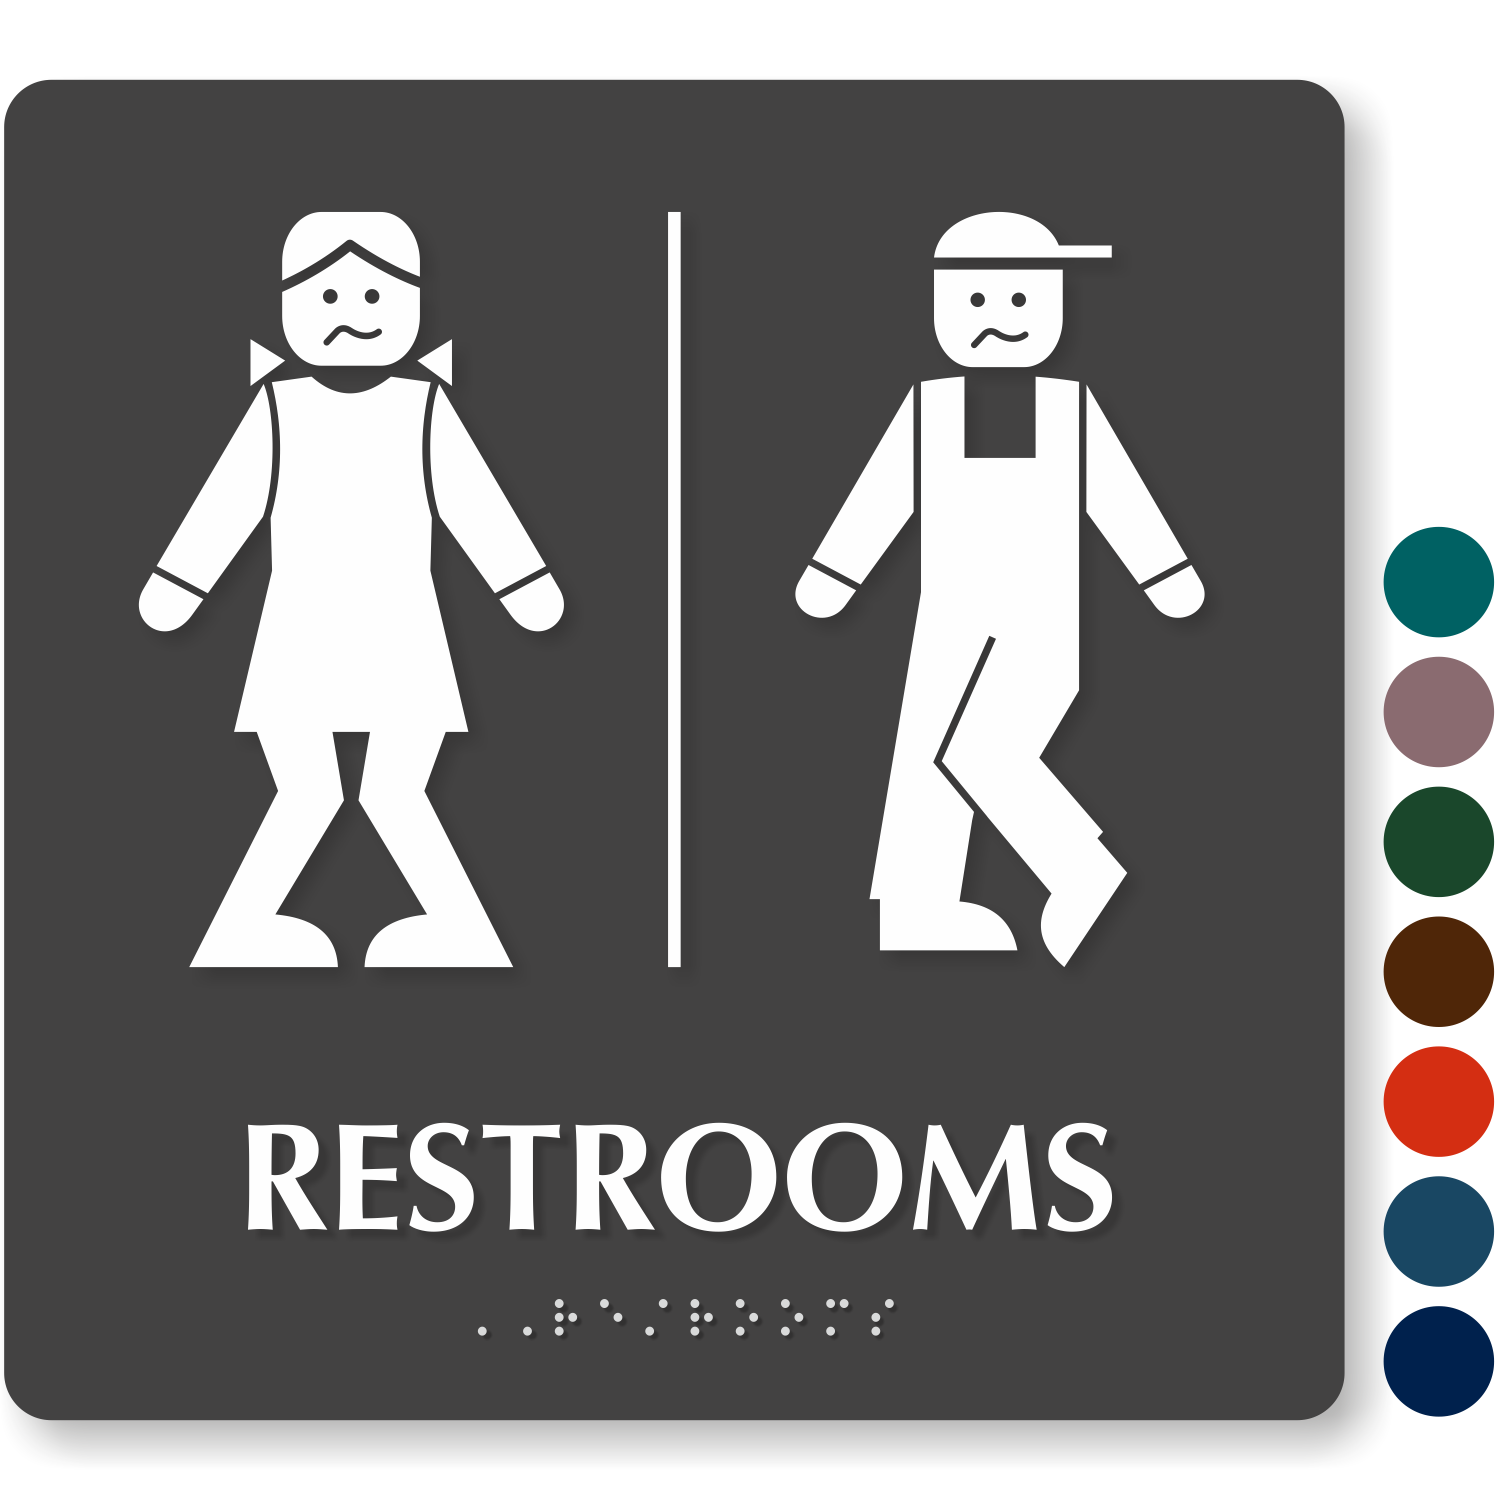 Bathroom Sign Free Printable Image To U